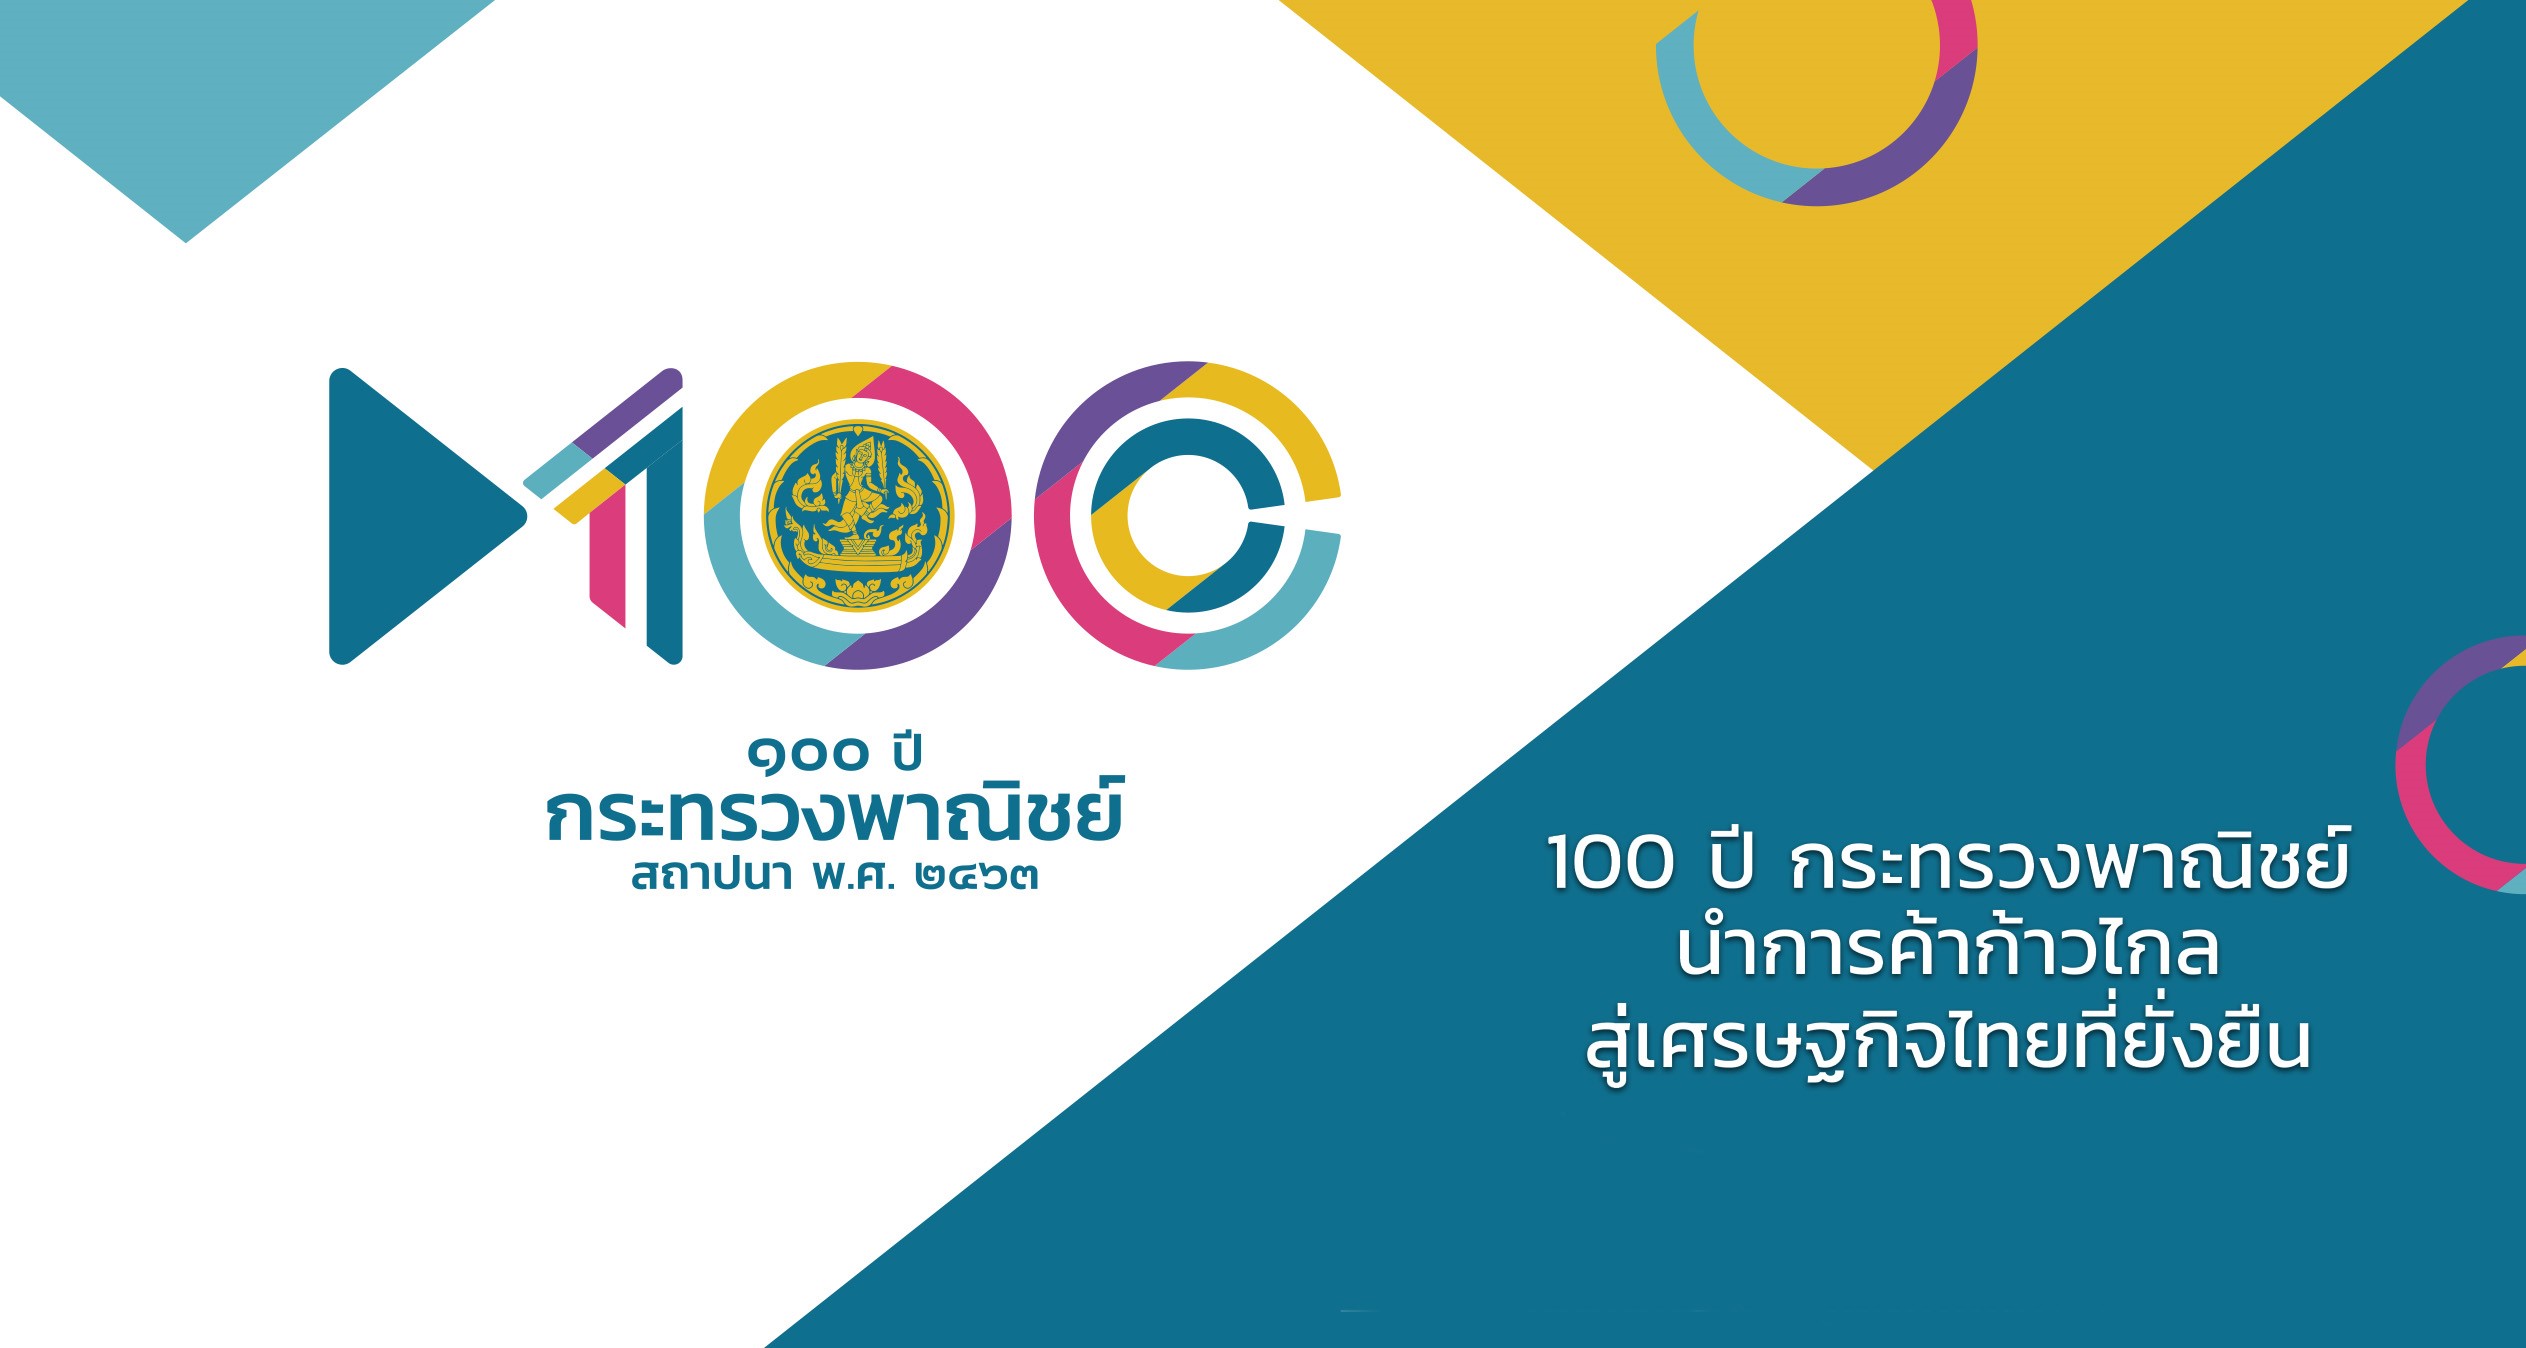 100 ปี กระทรวงพาณิชย์ นำการค้าก้าวไกล สู่เศรษฐกิจไทยที่ยั่งยืน